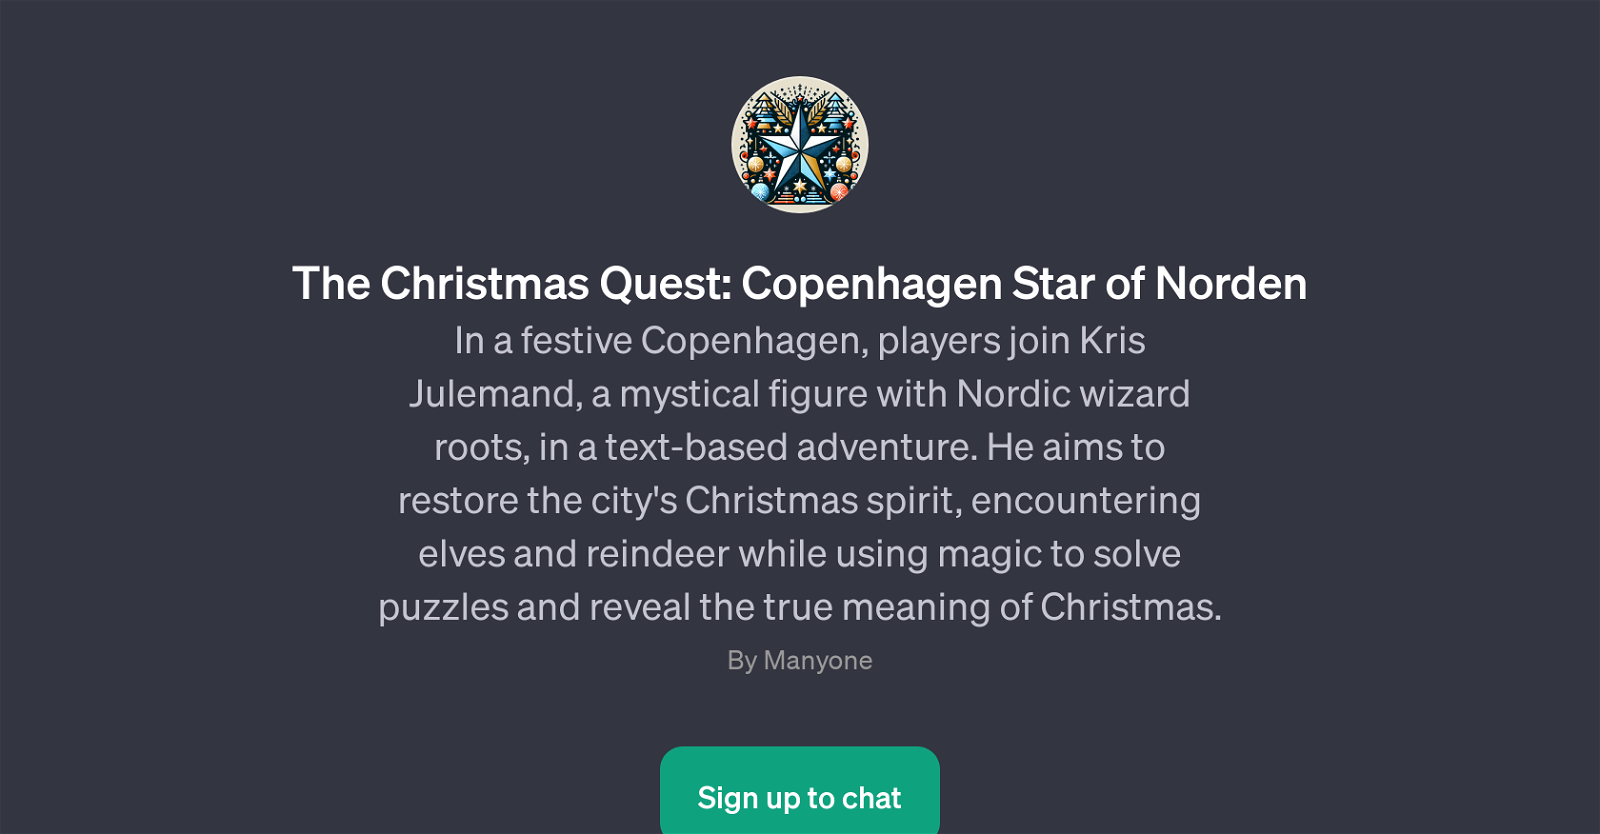 The Christmas Quest: Copenhagen Star of Norden website